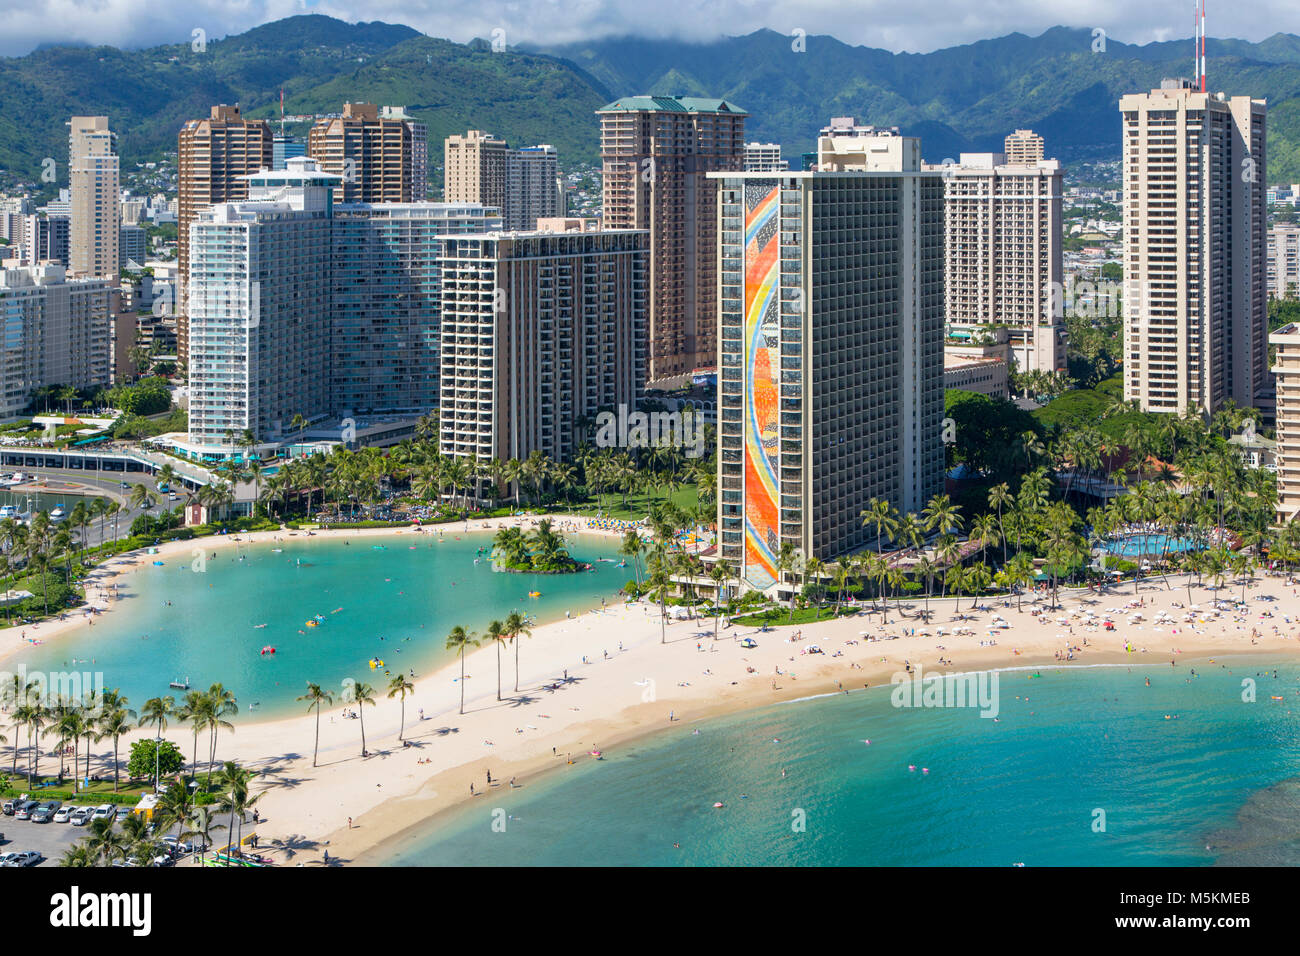 WHERE TO EAT  Hilton Hawaiian Village Waikiki Beach Resort 